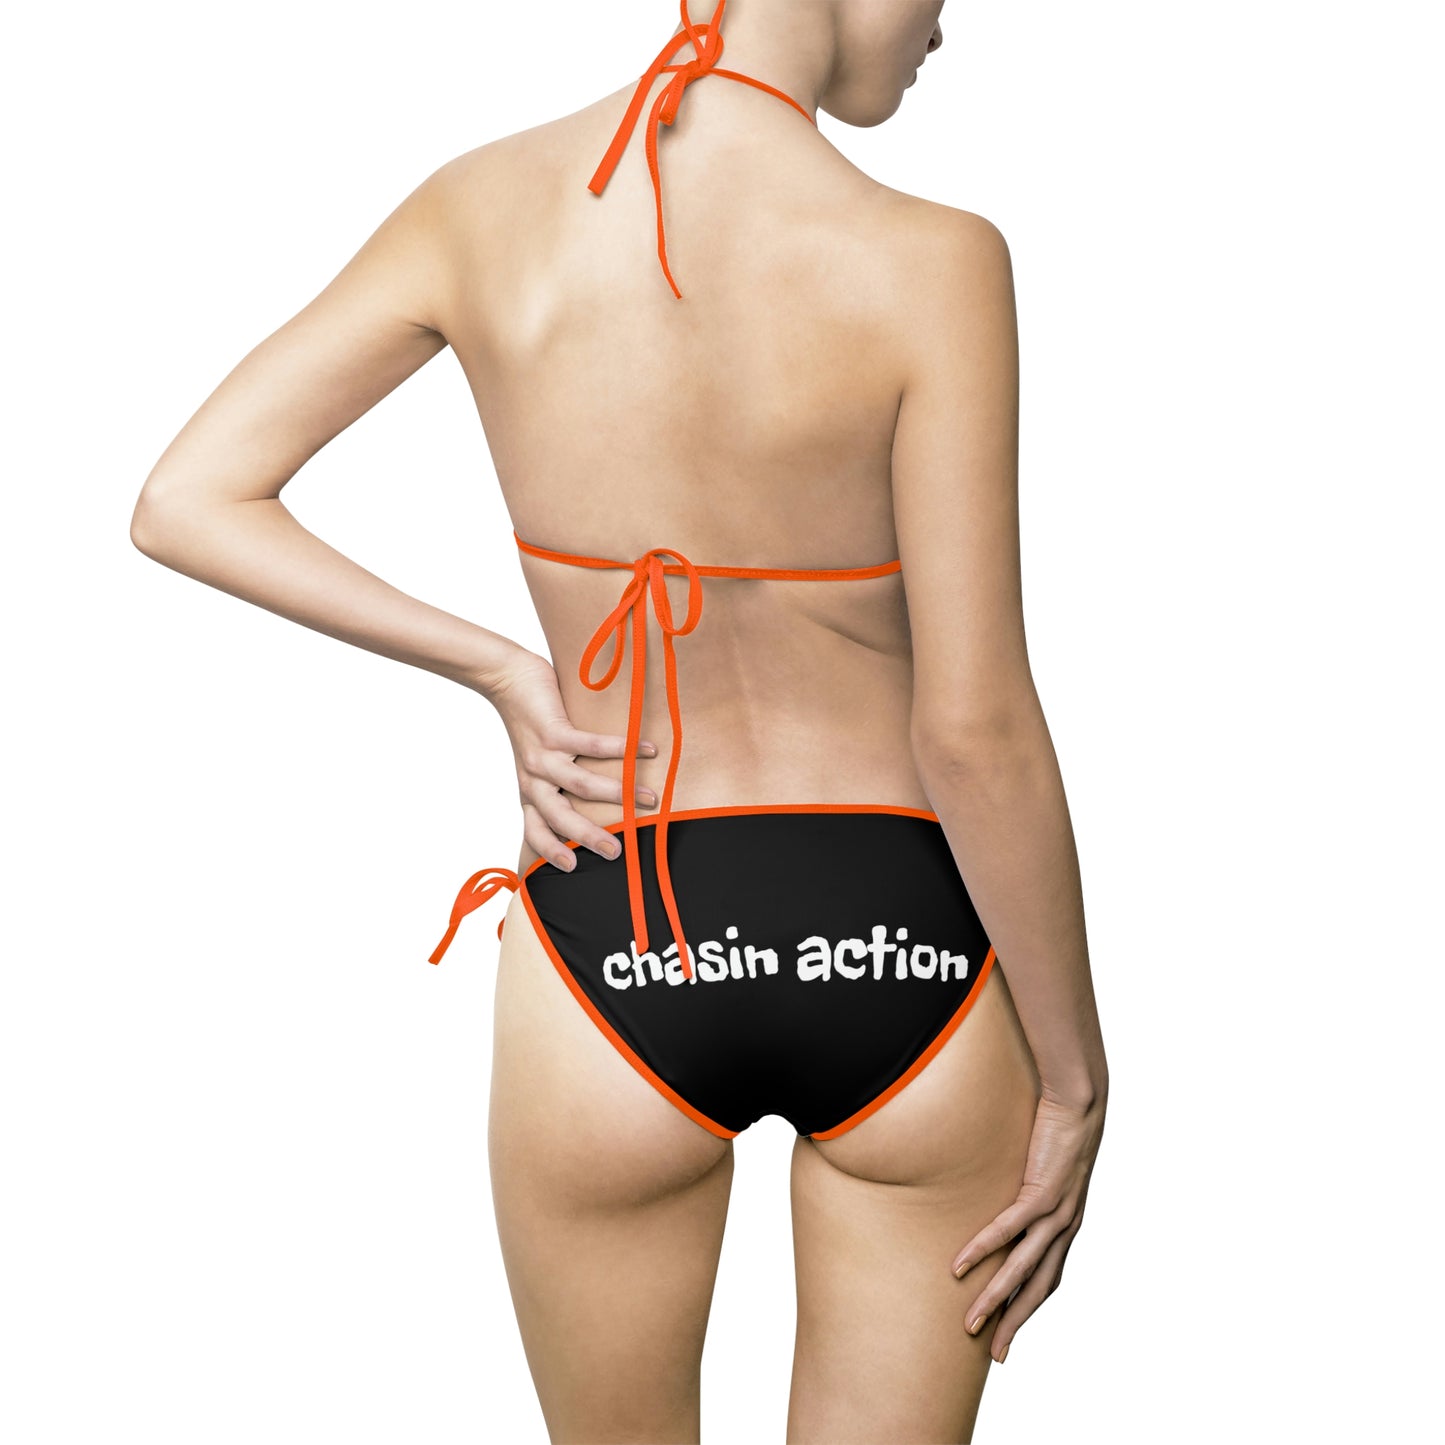 MUSH "Chasin Action" Women's Bikini Swimsuit